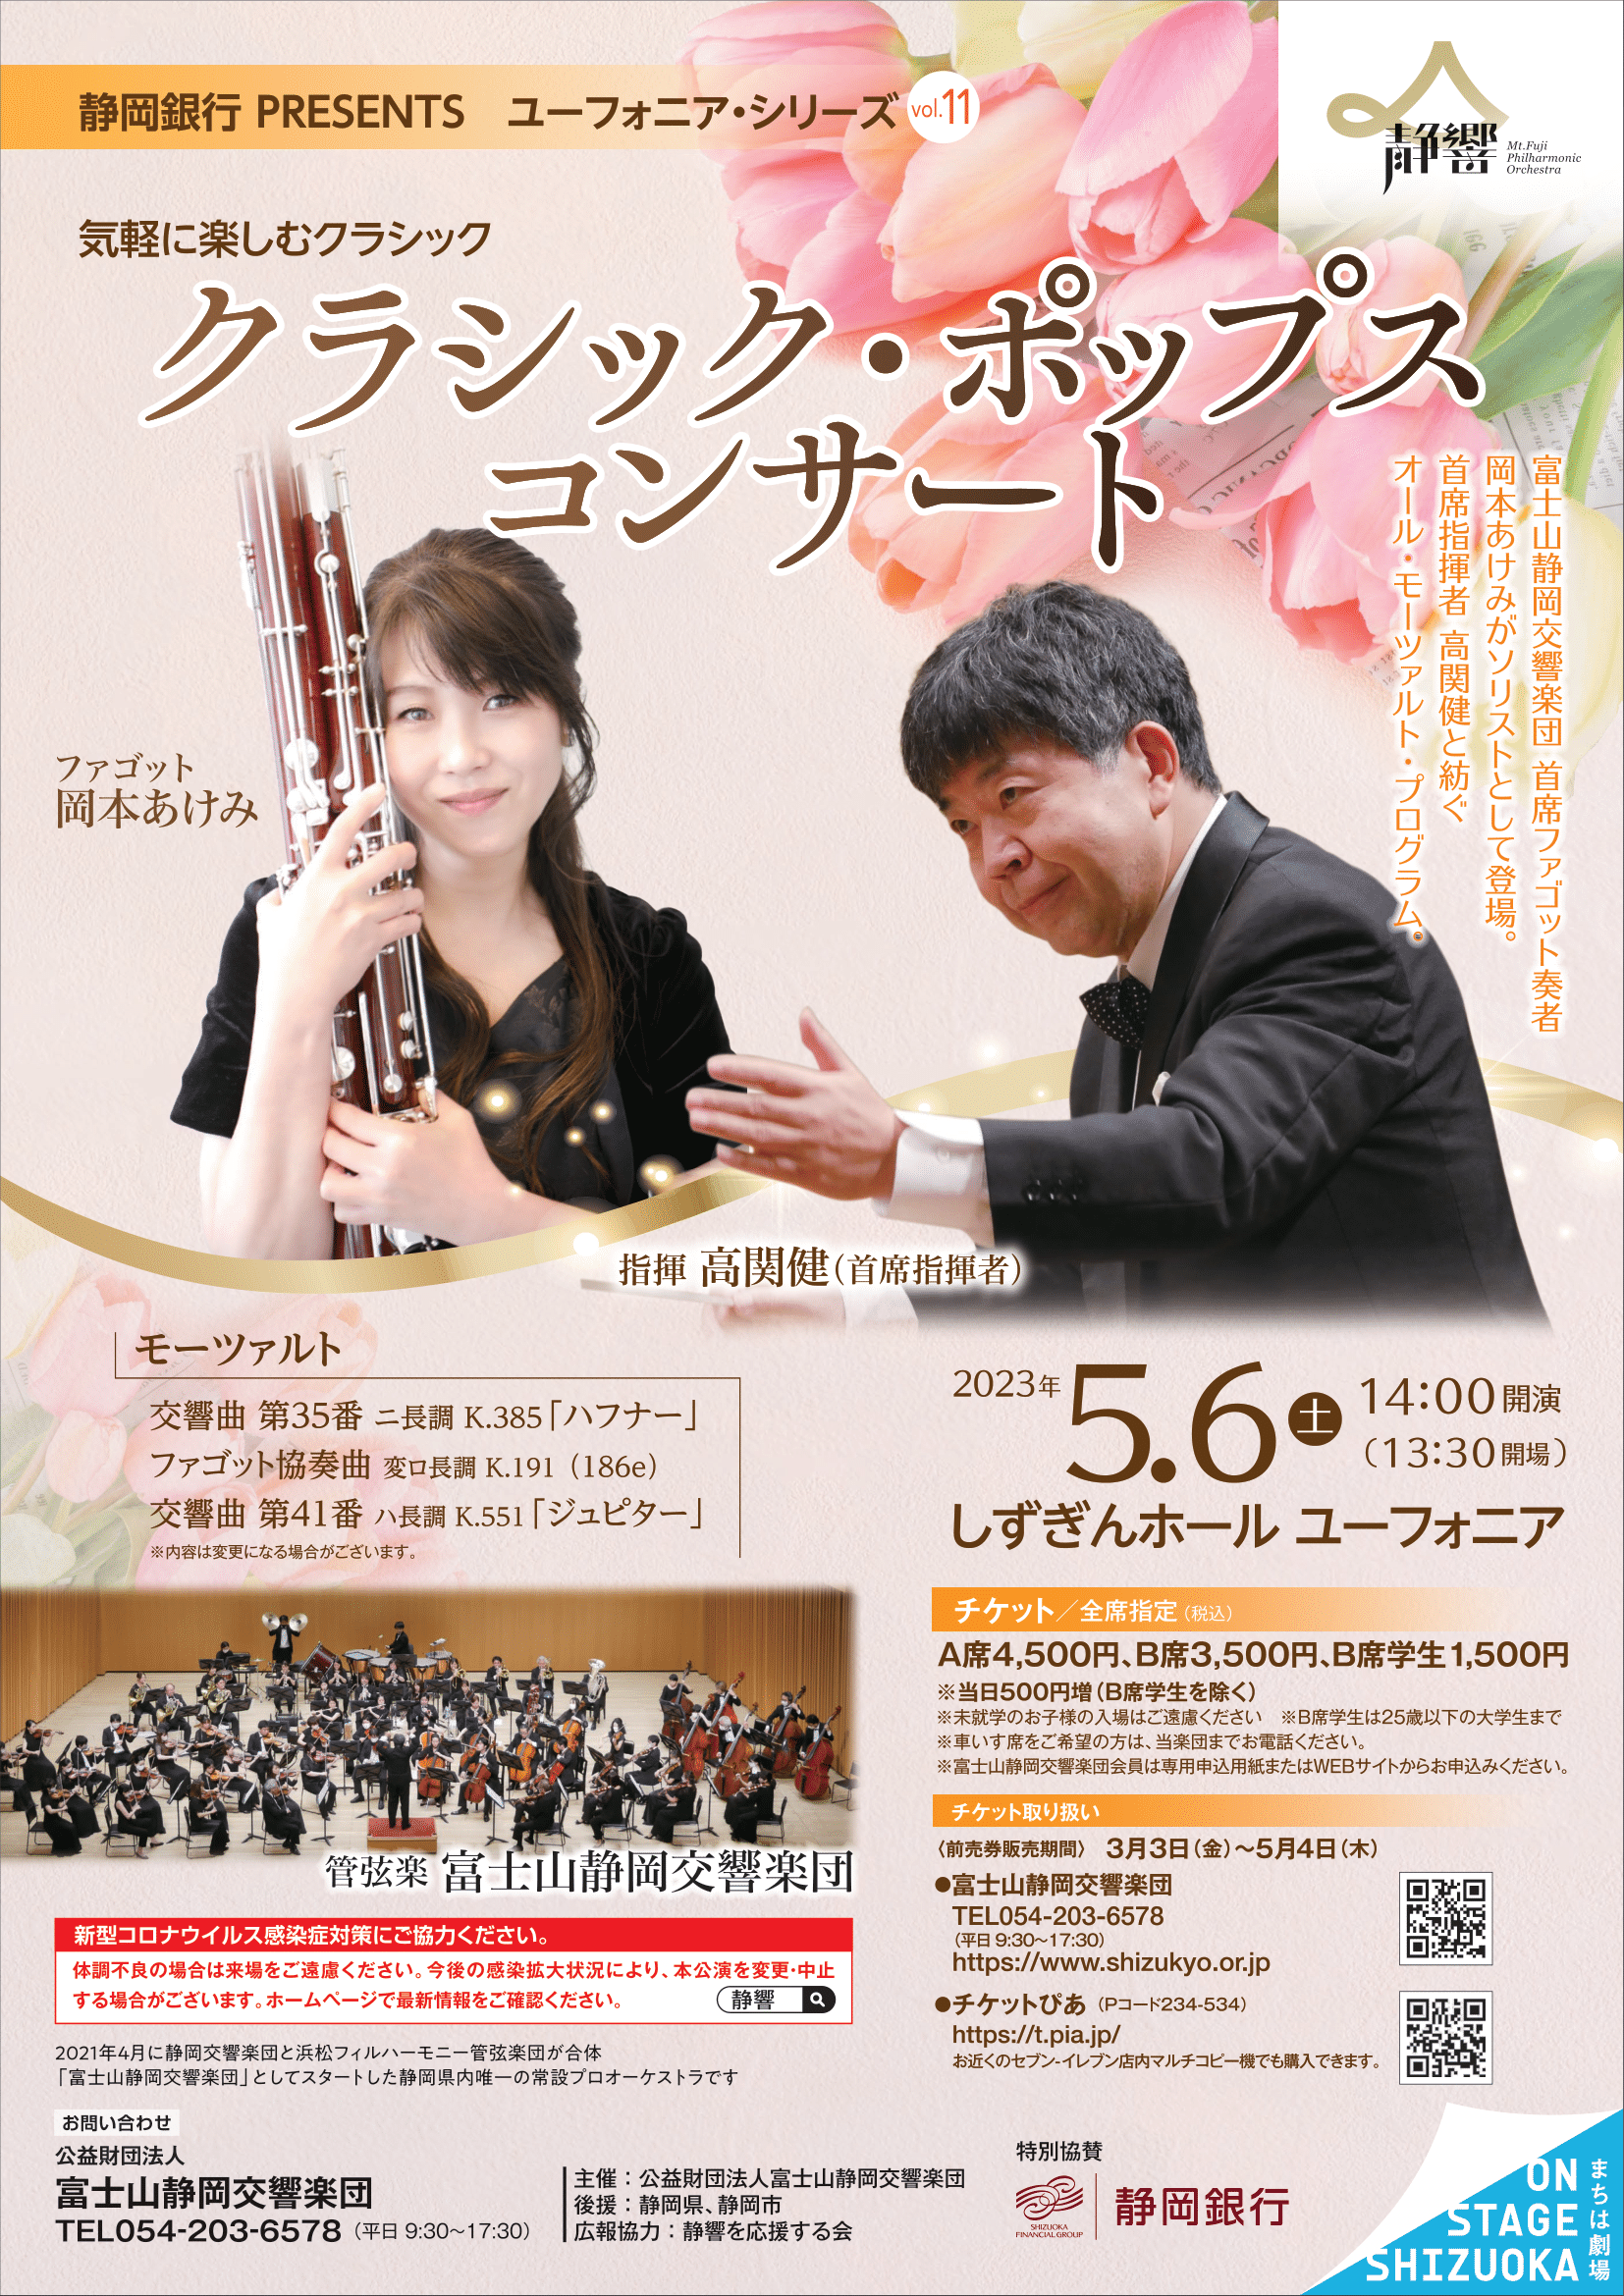 富士山静岡交響楽団クラシック・ポップスコンサートのフライヤー画像